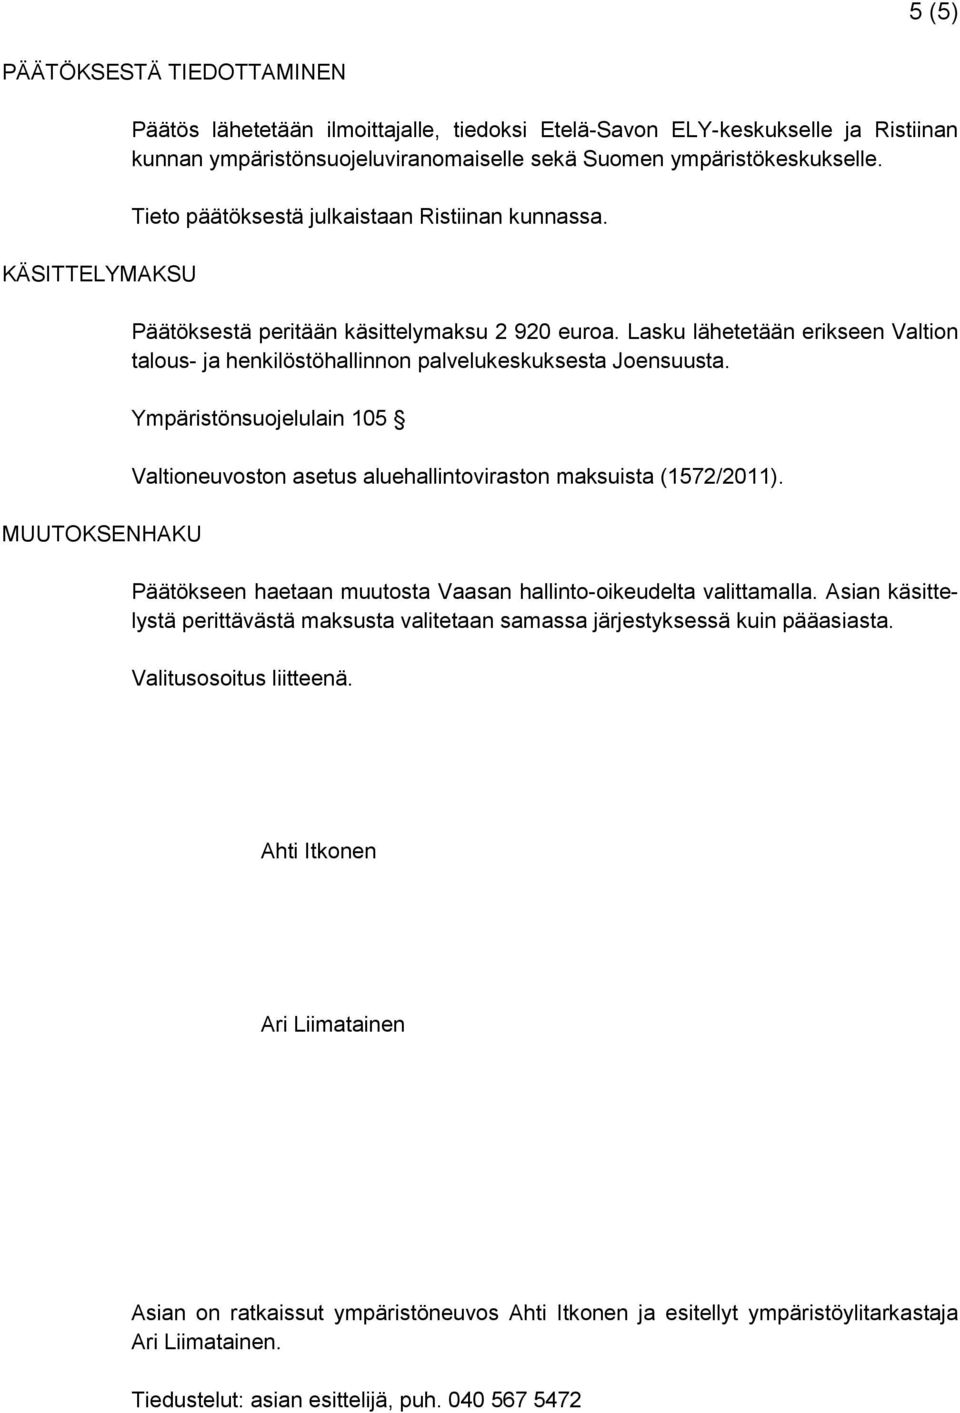 Lasku lähetetään erikseen Valtion talous- ja henkilöstöhallinnon palvelukeskuksesta Joensuusta. Ympäristönsuojelulain 105 Valtioneuvoston asetus aluehallintoviraston maksuista (1572/2011).